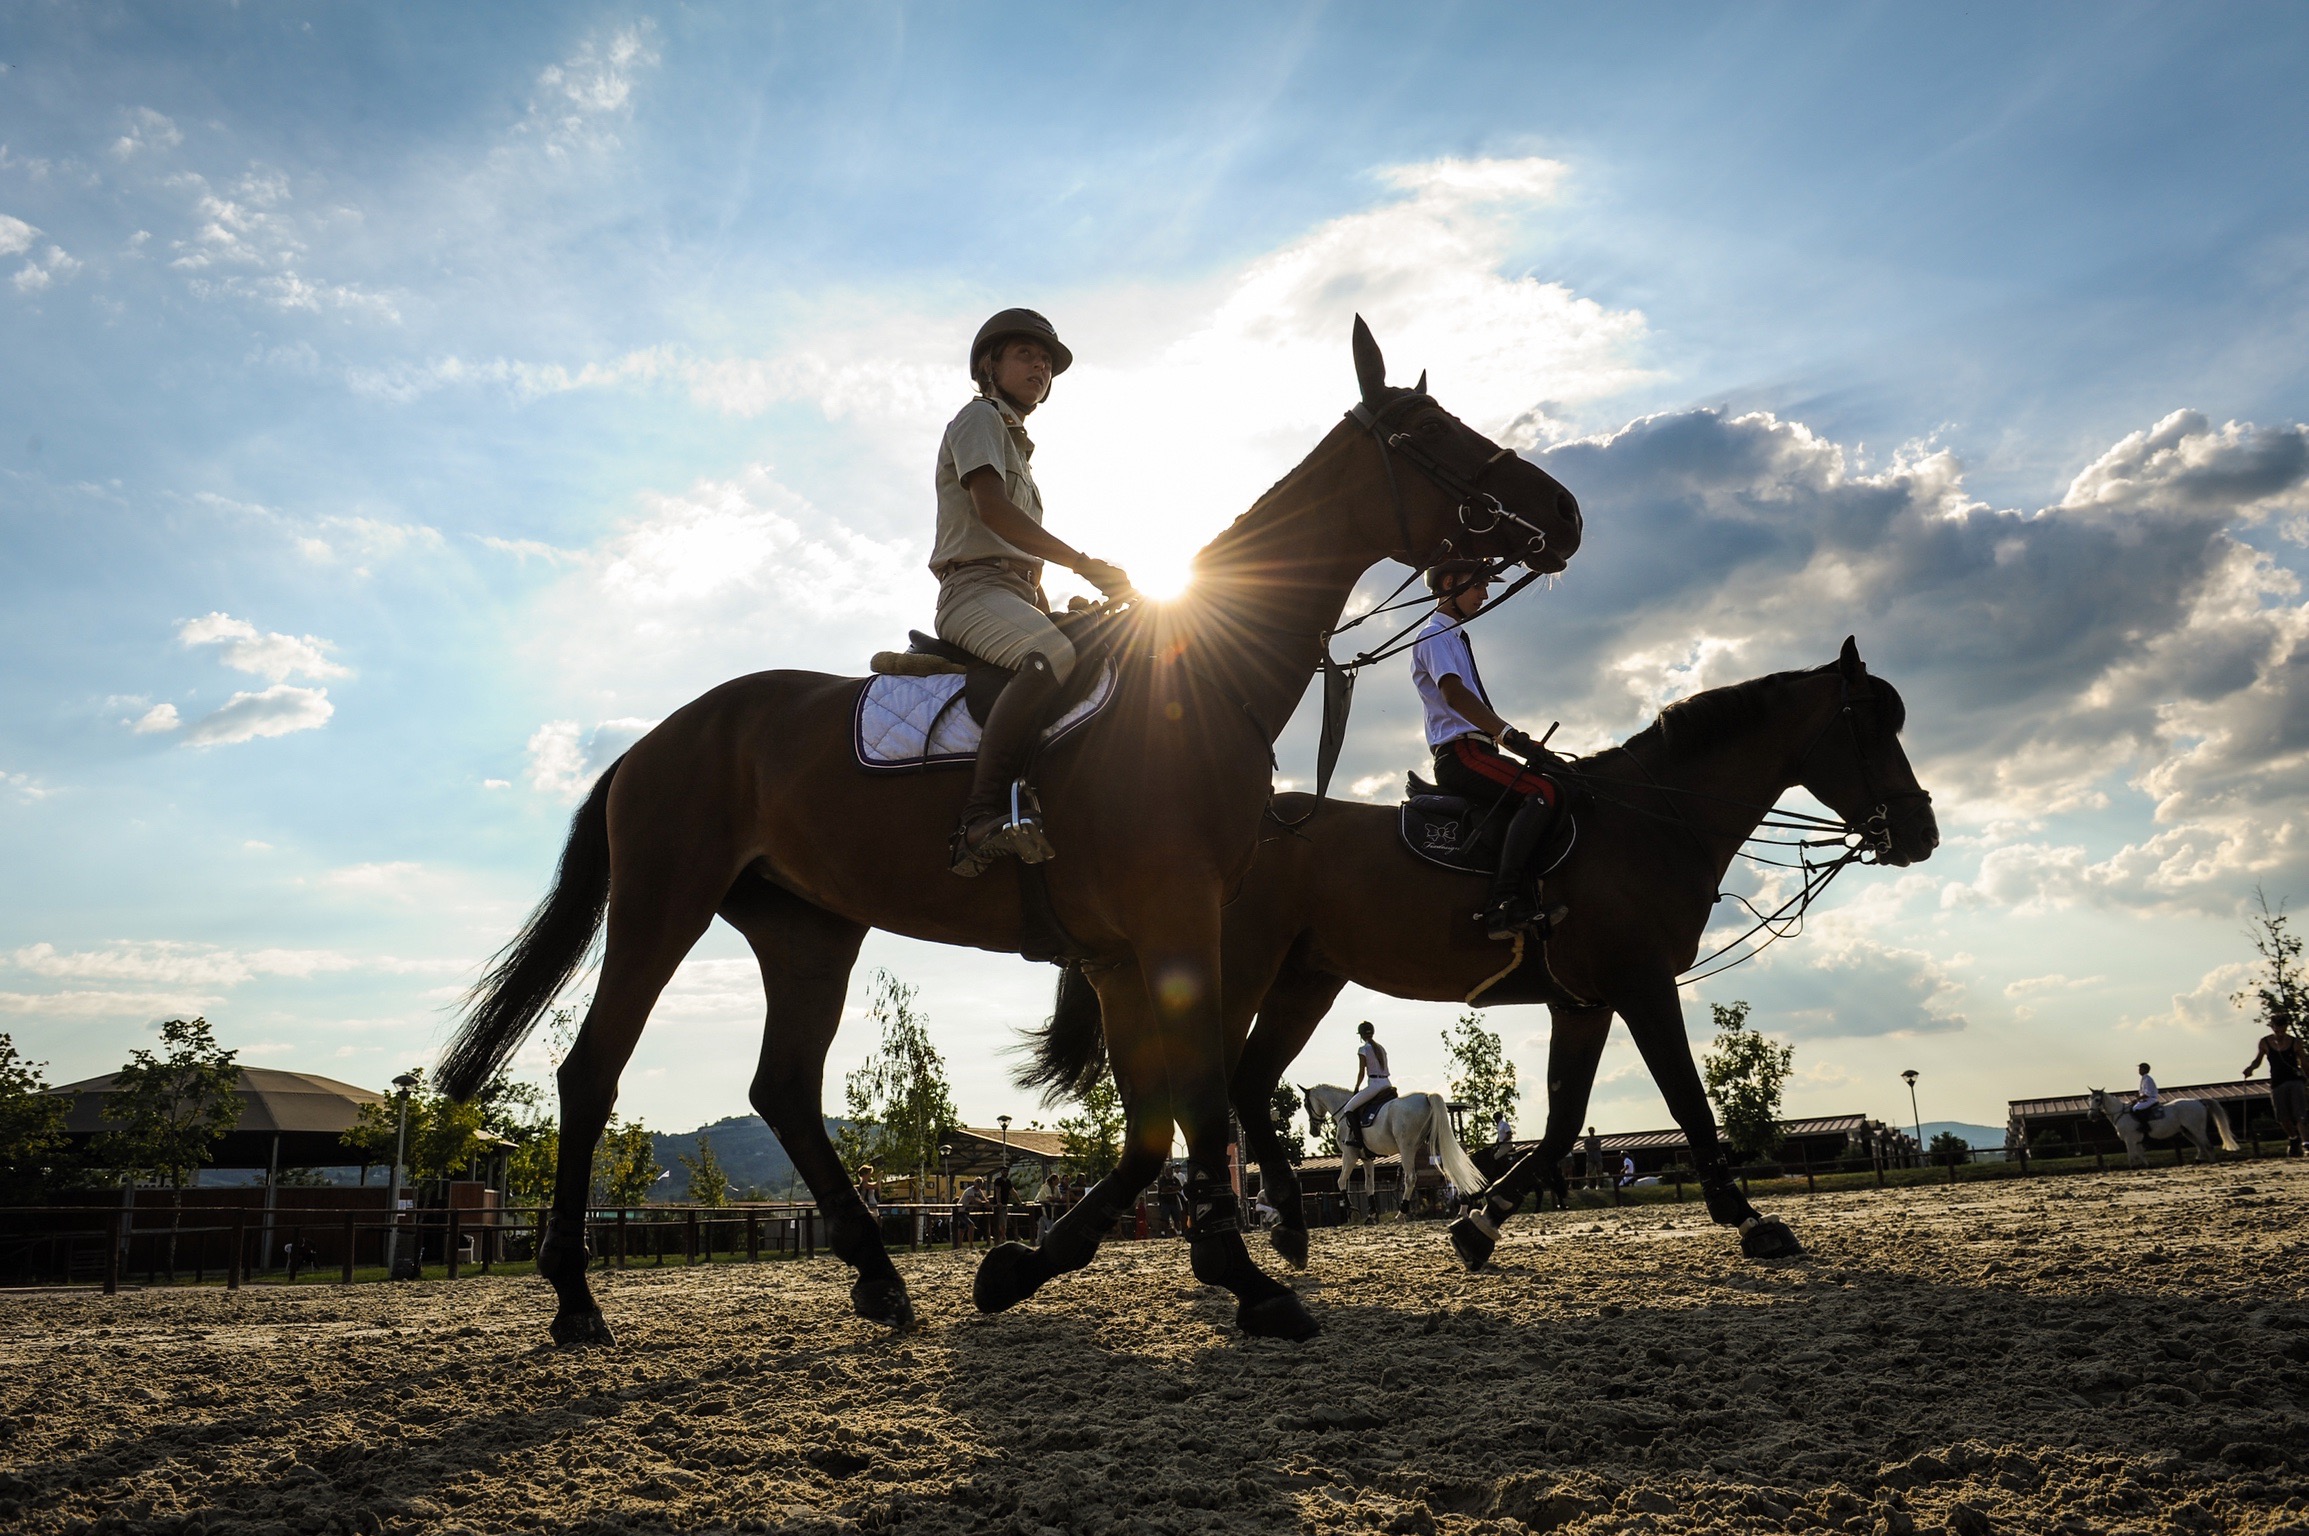 Horses Le Lame, Montefalco chiude l’anno con il salto ostacoli